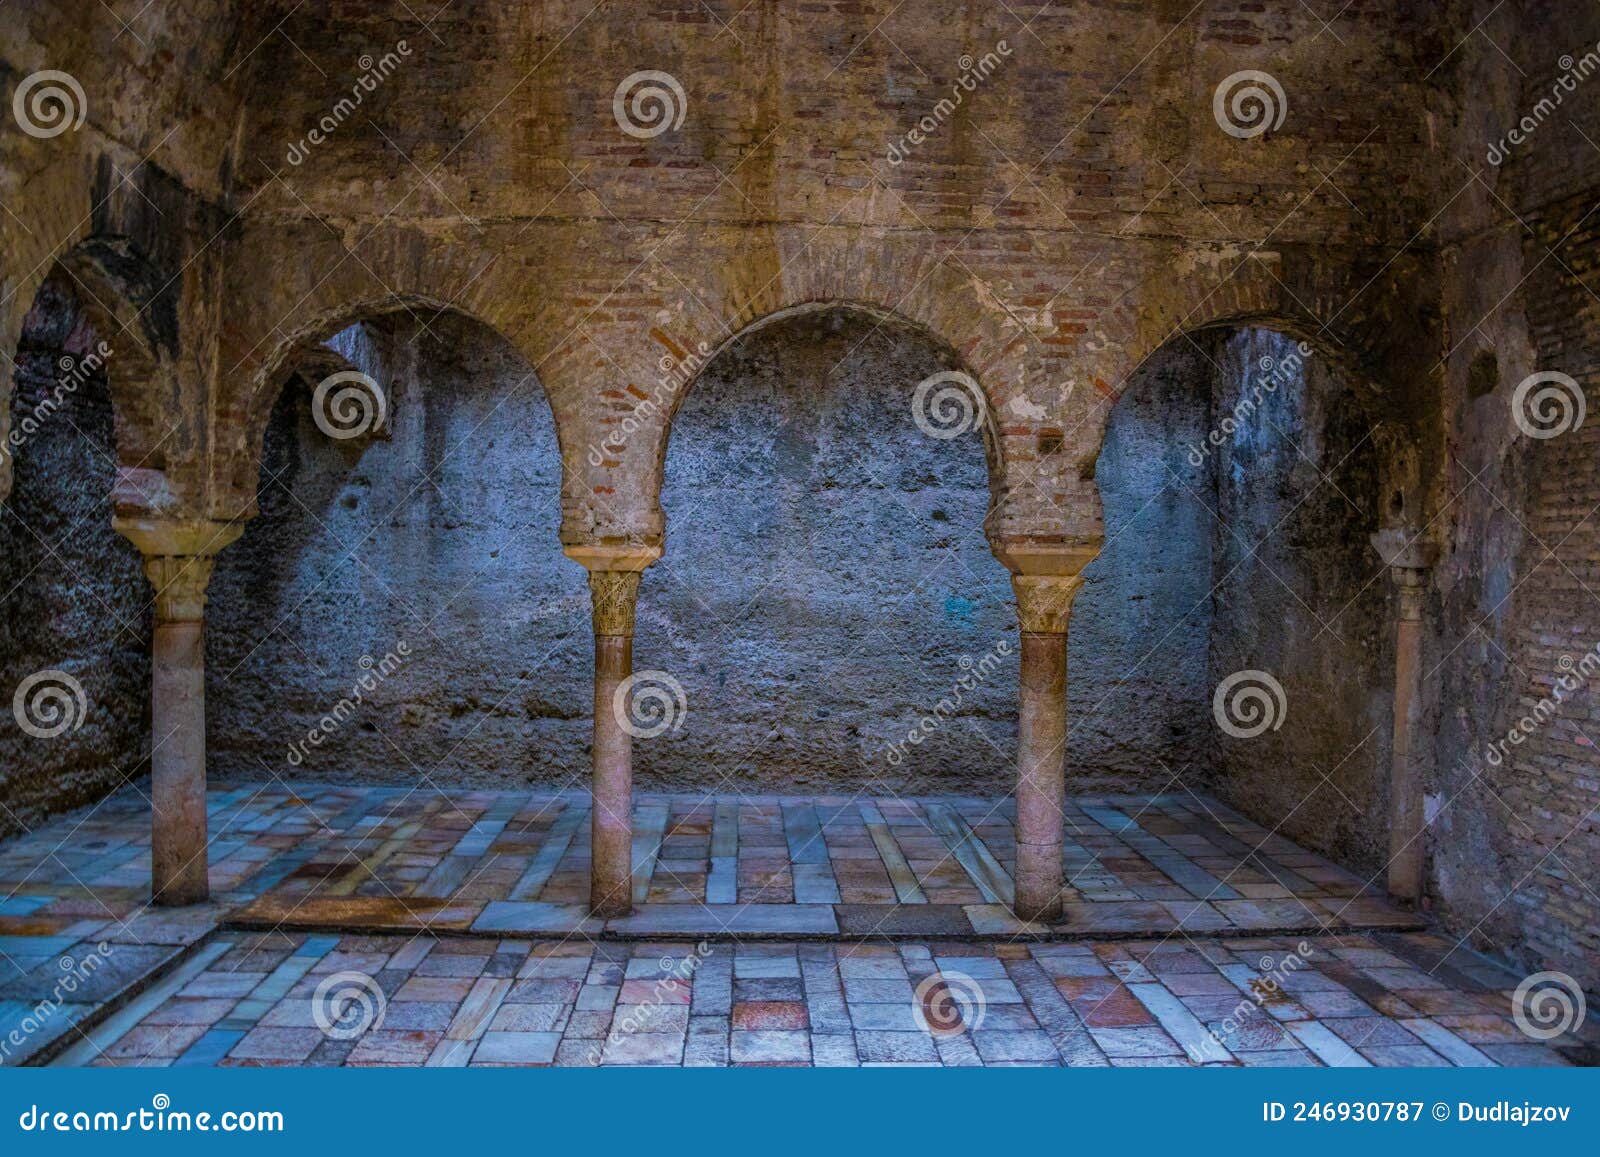 interior of banos arabes in spanish city granada....image